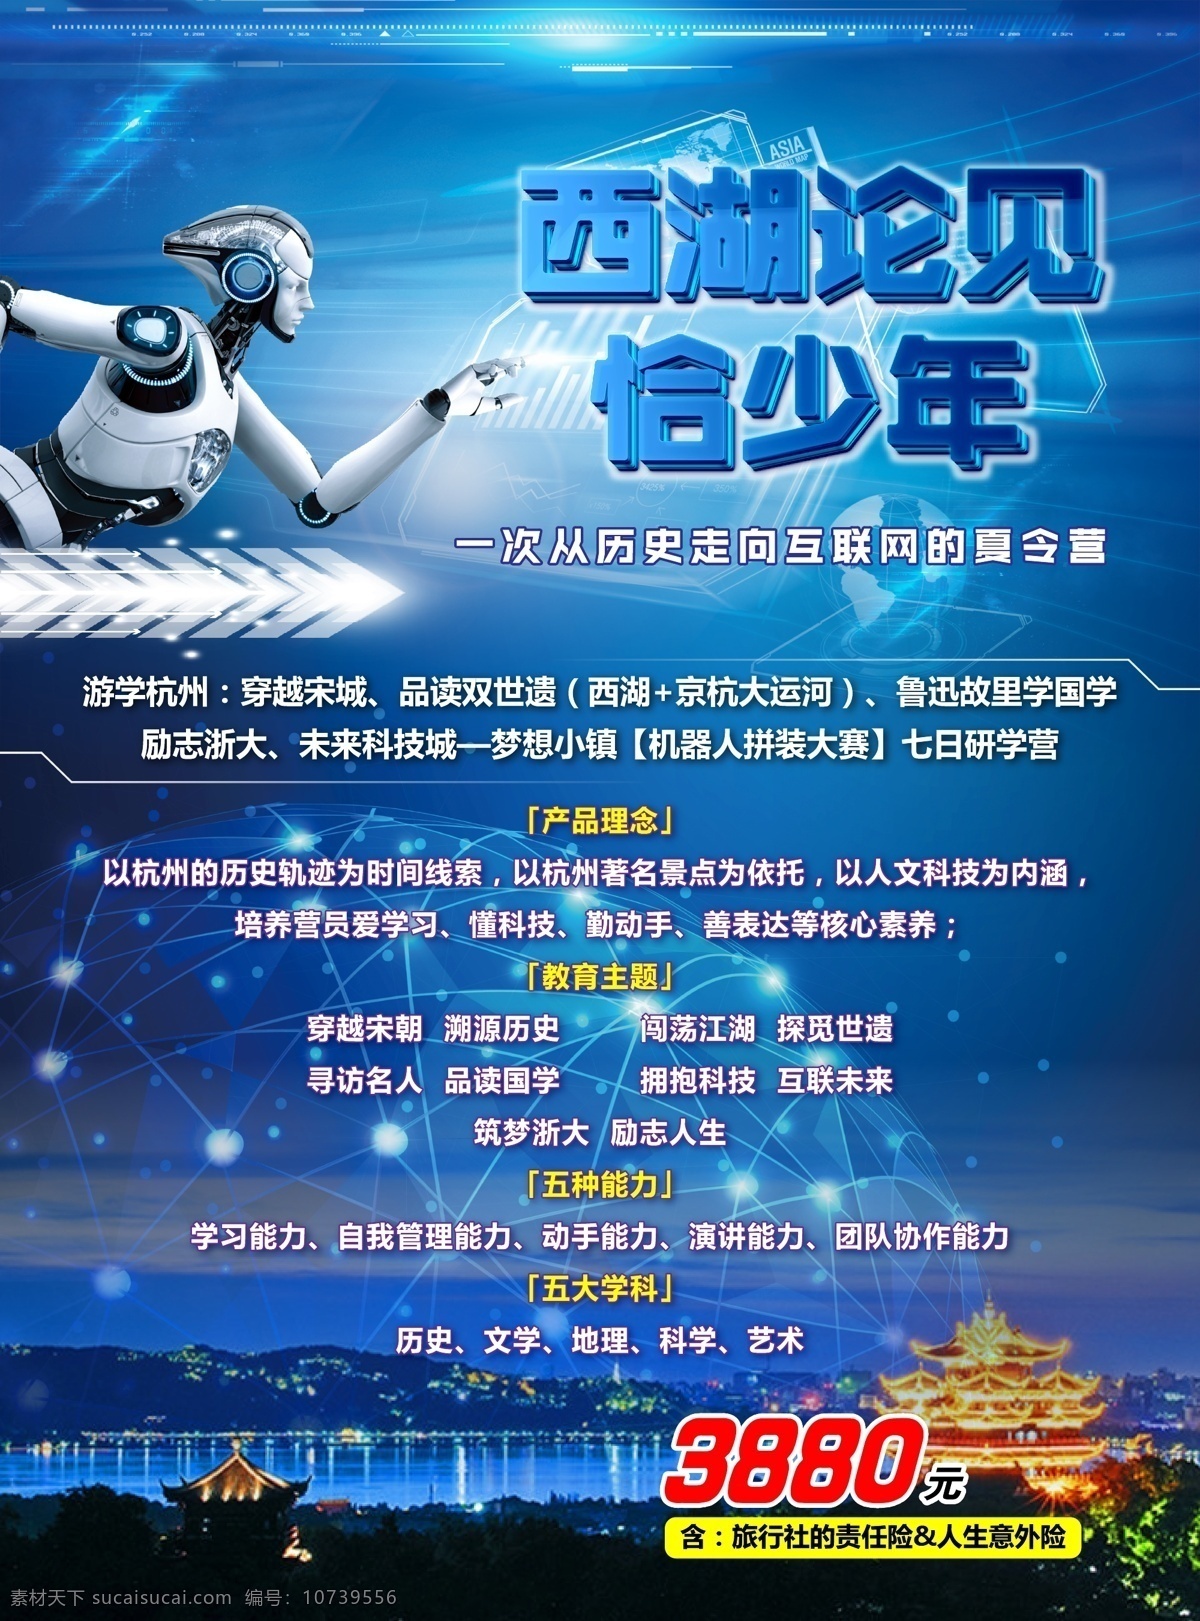 西湖 见 恰 少年 海报 夏令营 机器人 旅游dm单 杭州